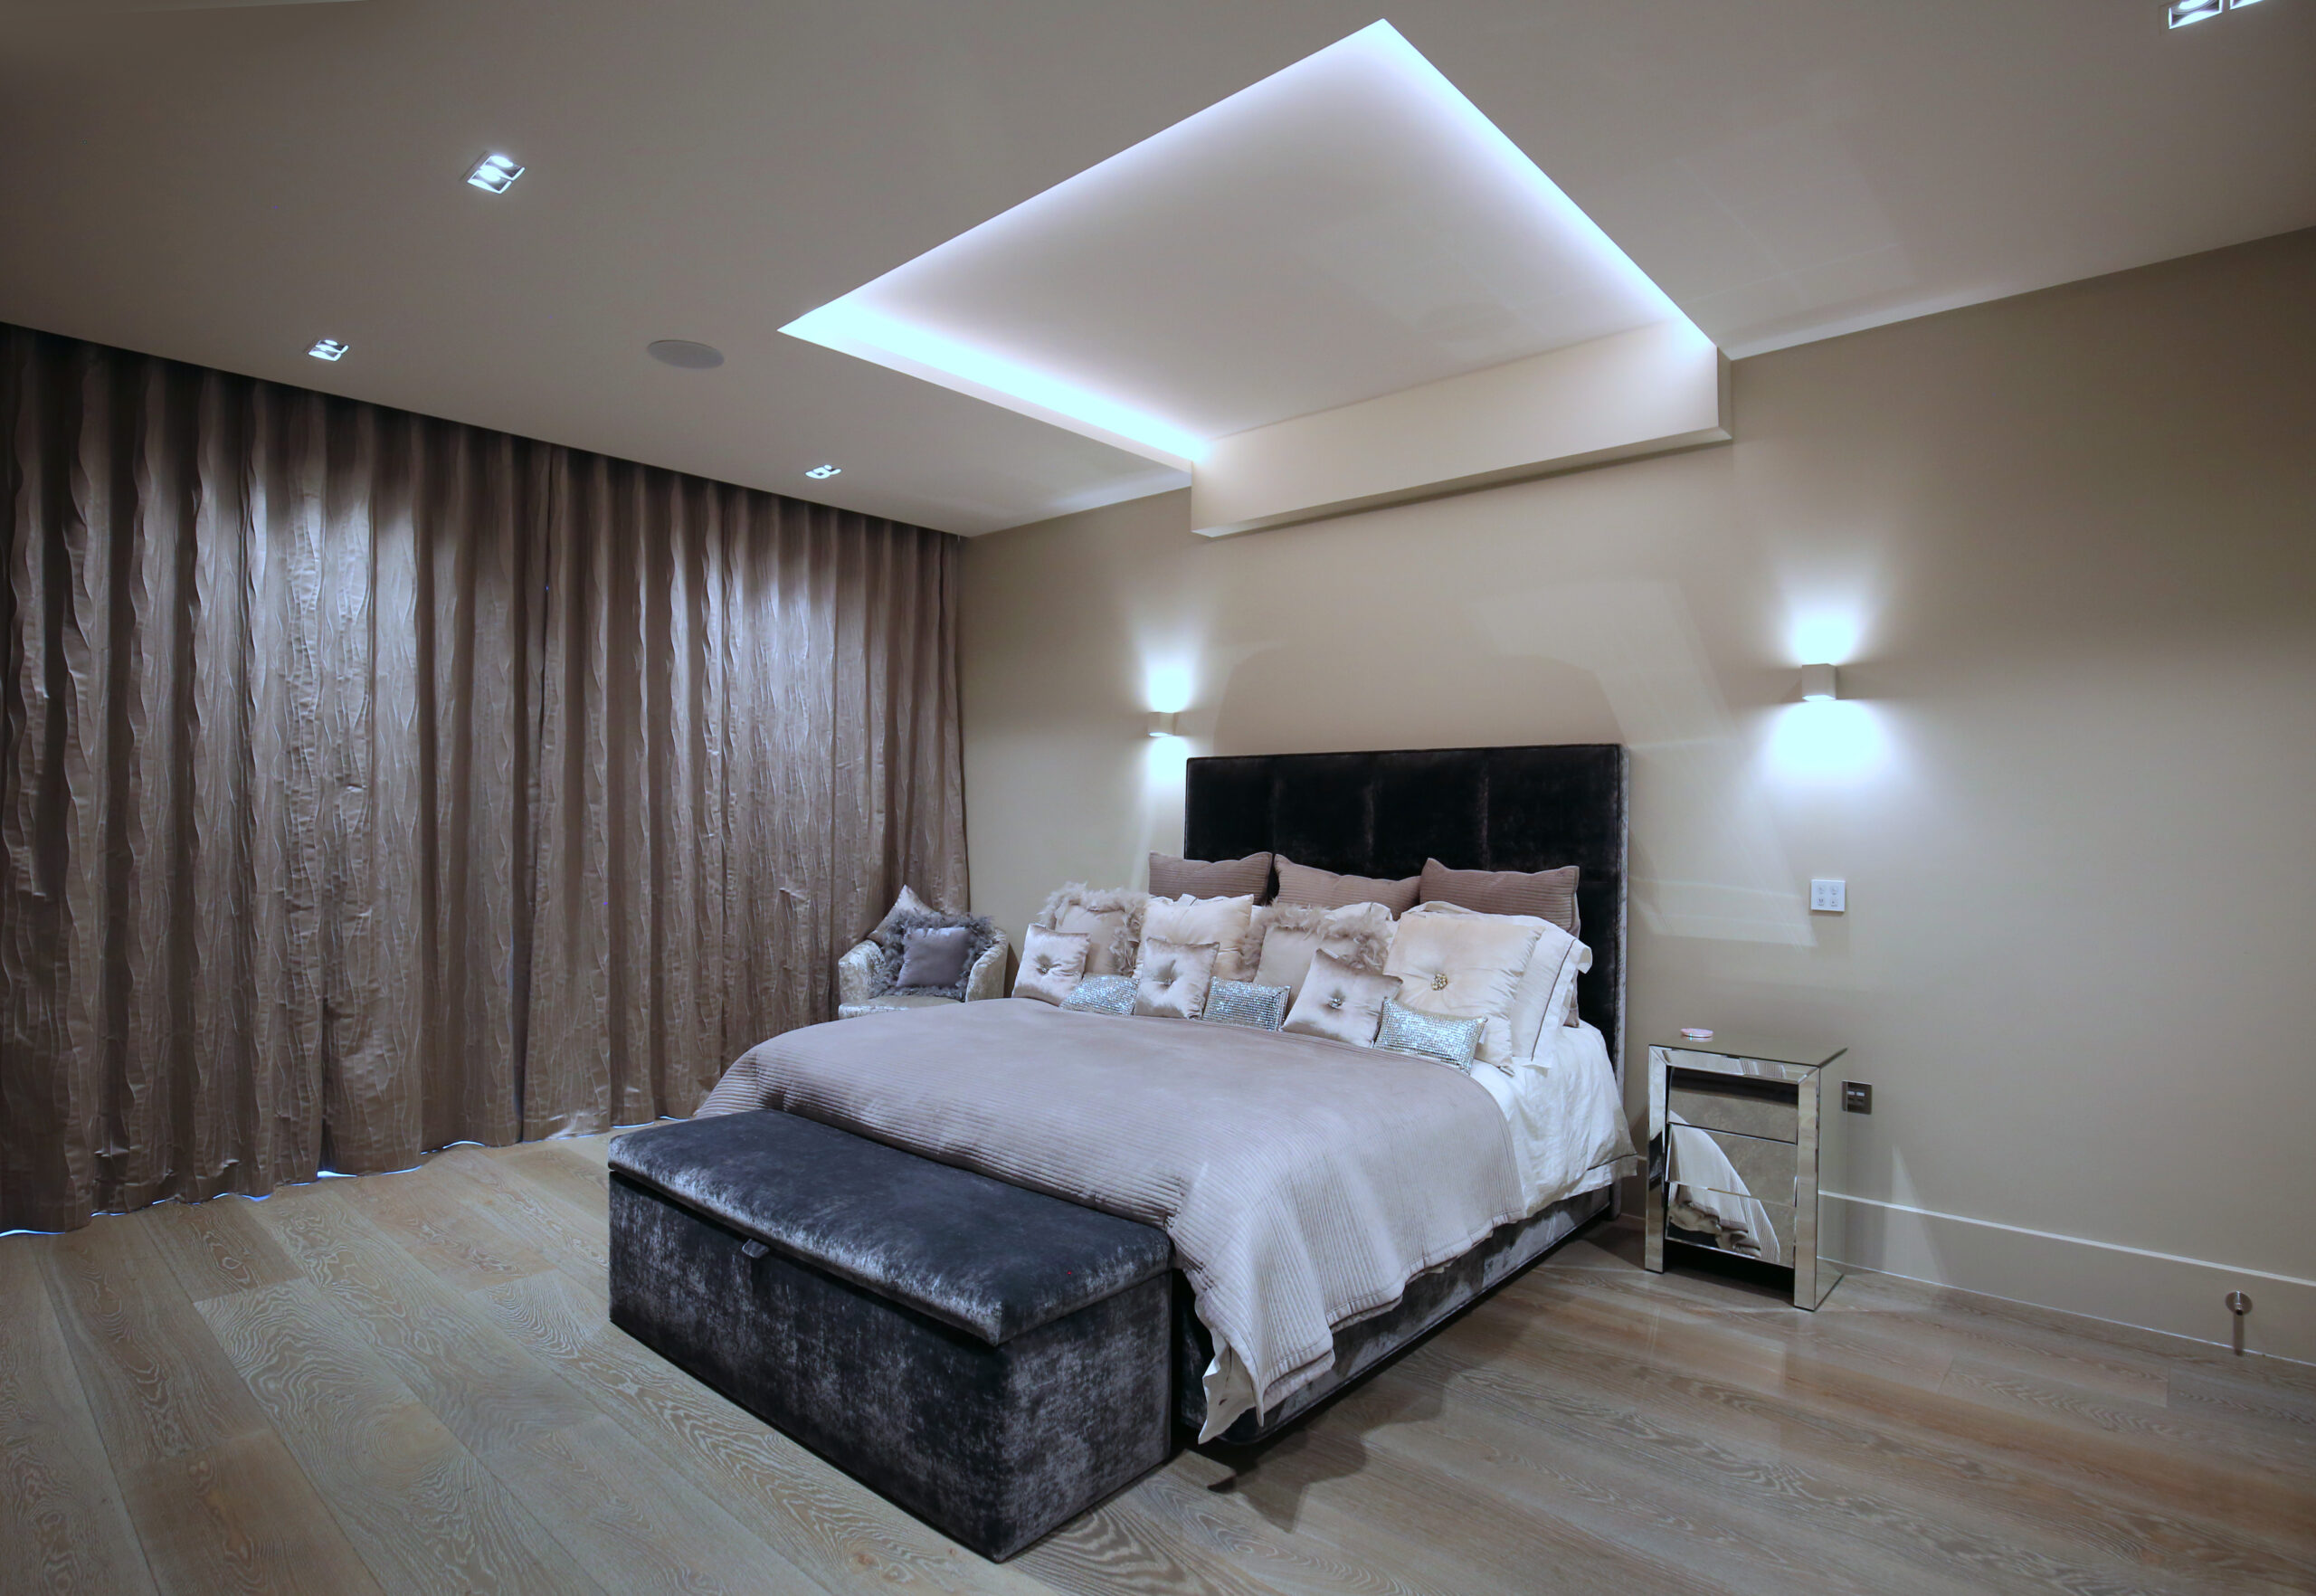 Surrey Contemporary Home Bedroom 2